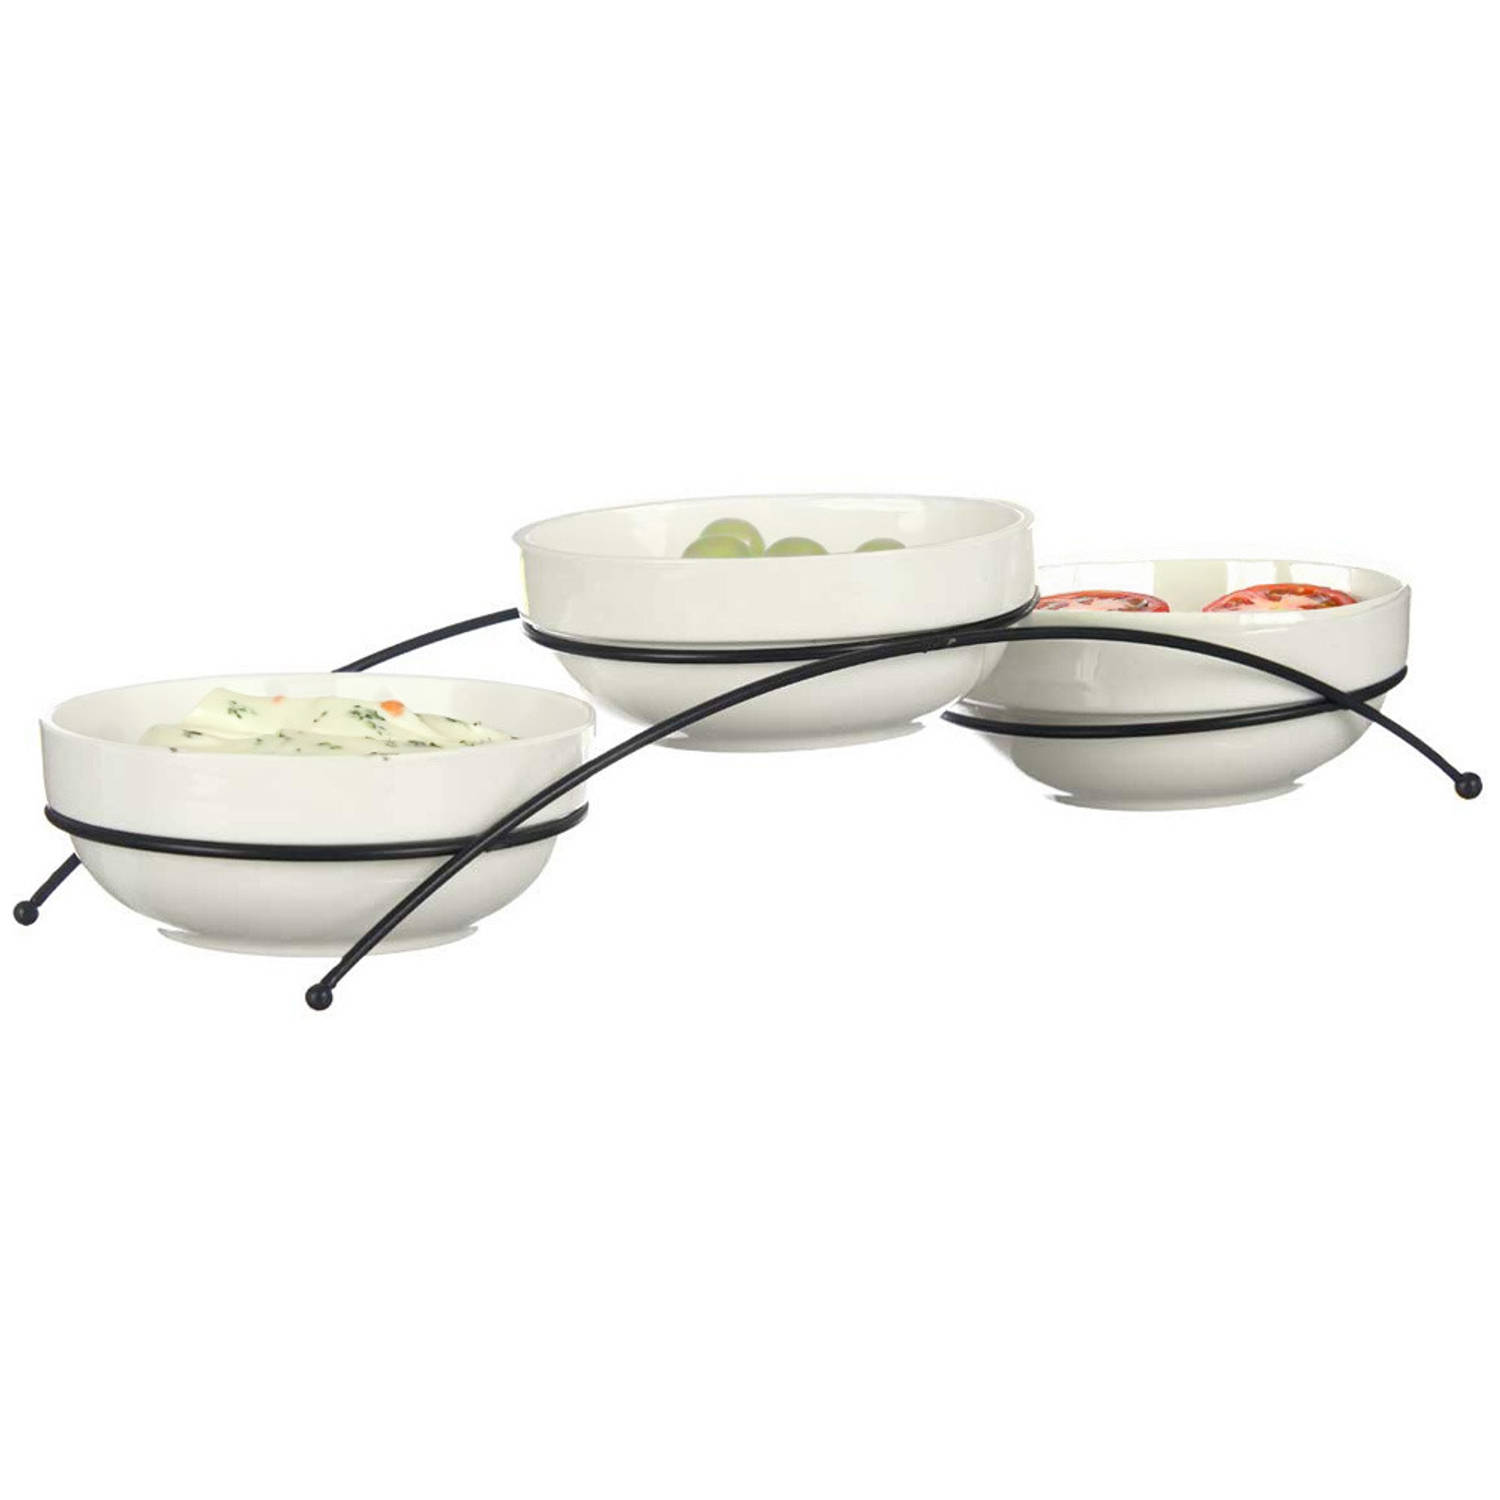 Vessia saus/snacks kommetjes/schaaltjes in standaard - wit - keramiek - set 3x stuks - D12 x 5 cm - Eettafel serveer schaaltjes